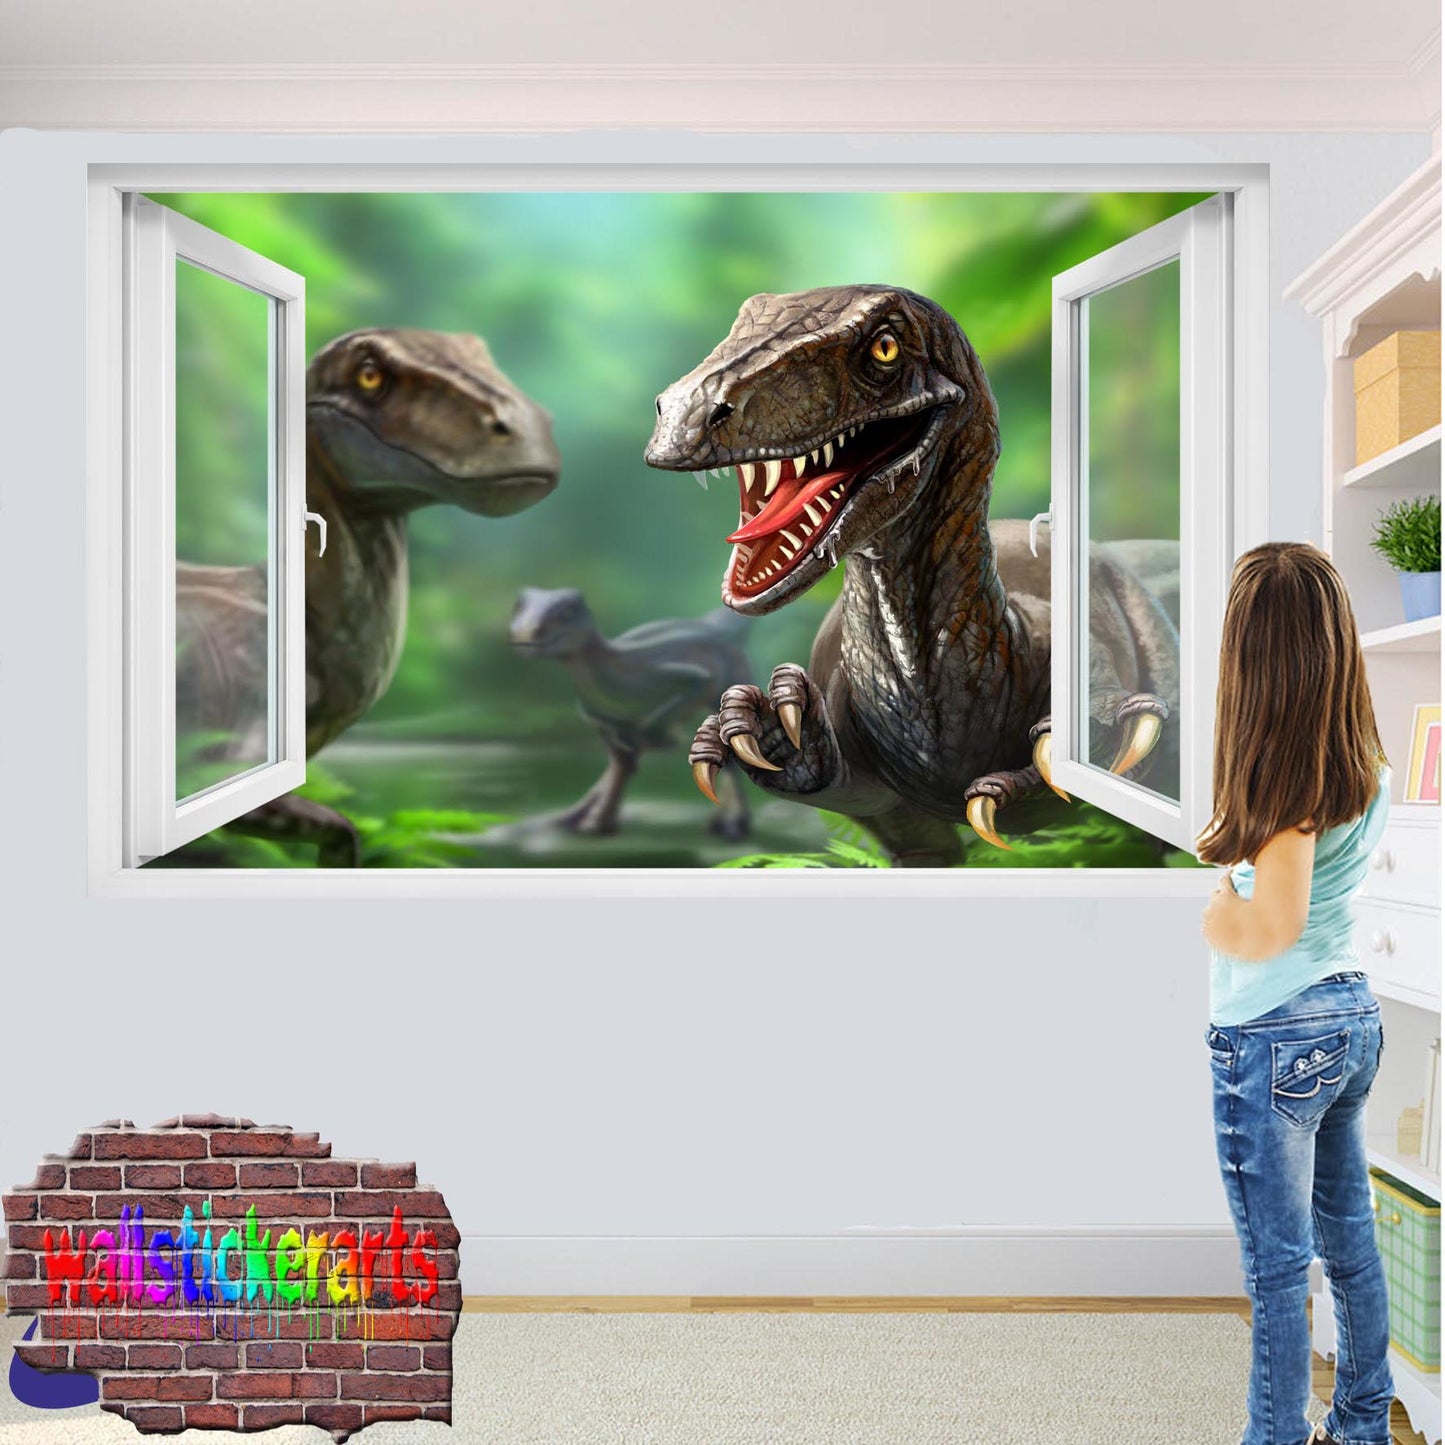 Jurassic World Dinosaurs Wall Sticker Mural Poster Decal